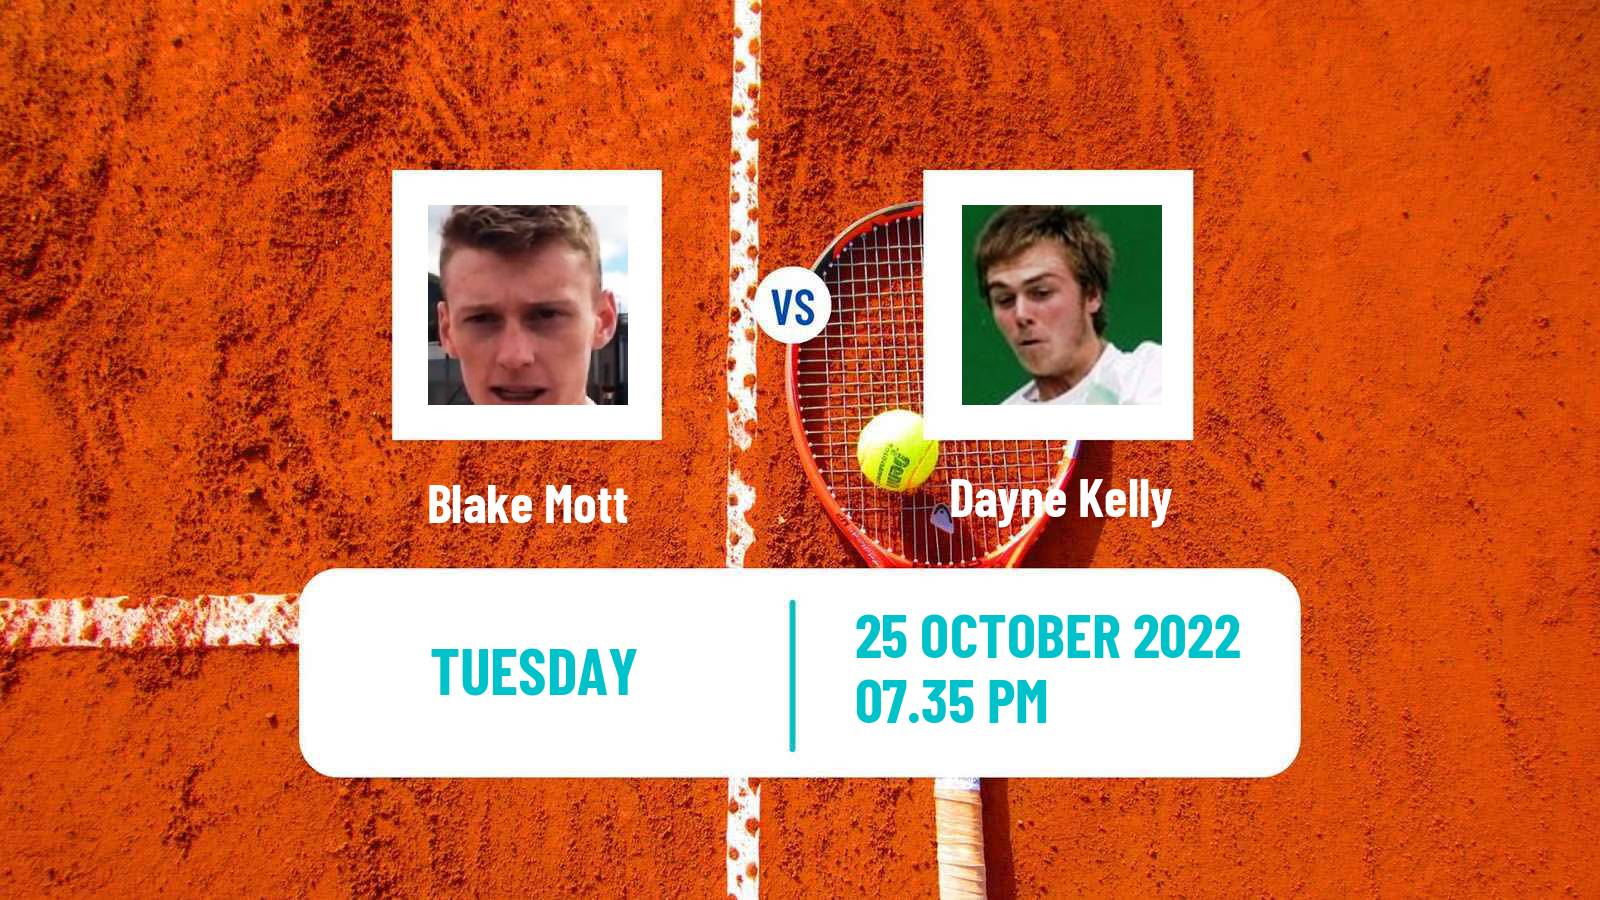 Tennis ATP Challenger Blake Mott - Dayne Kelly